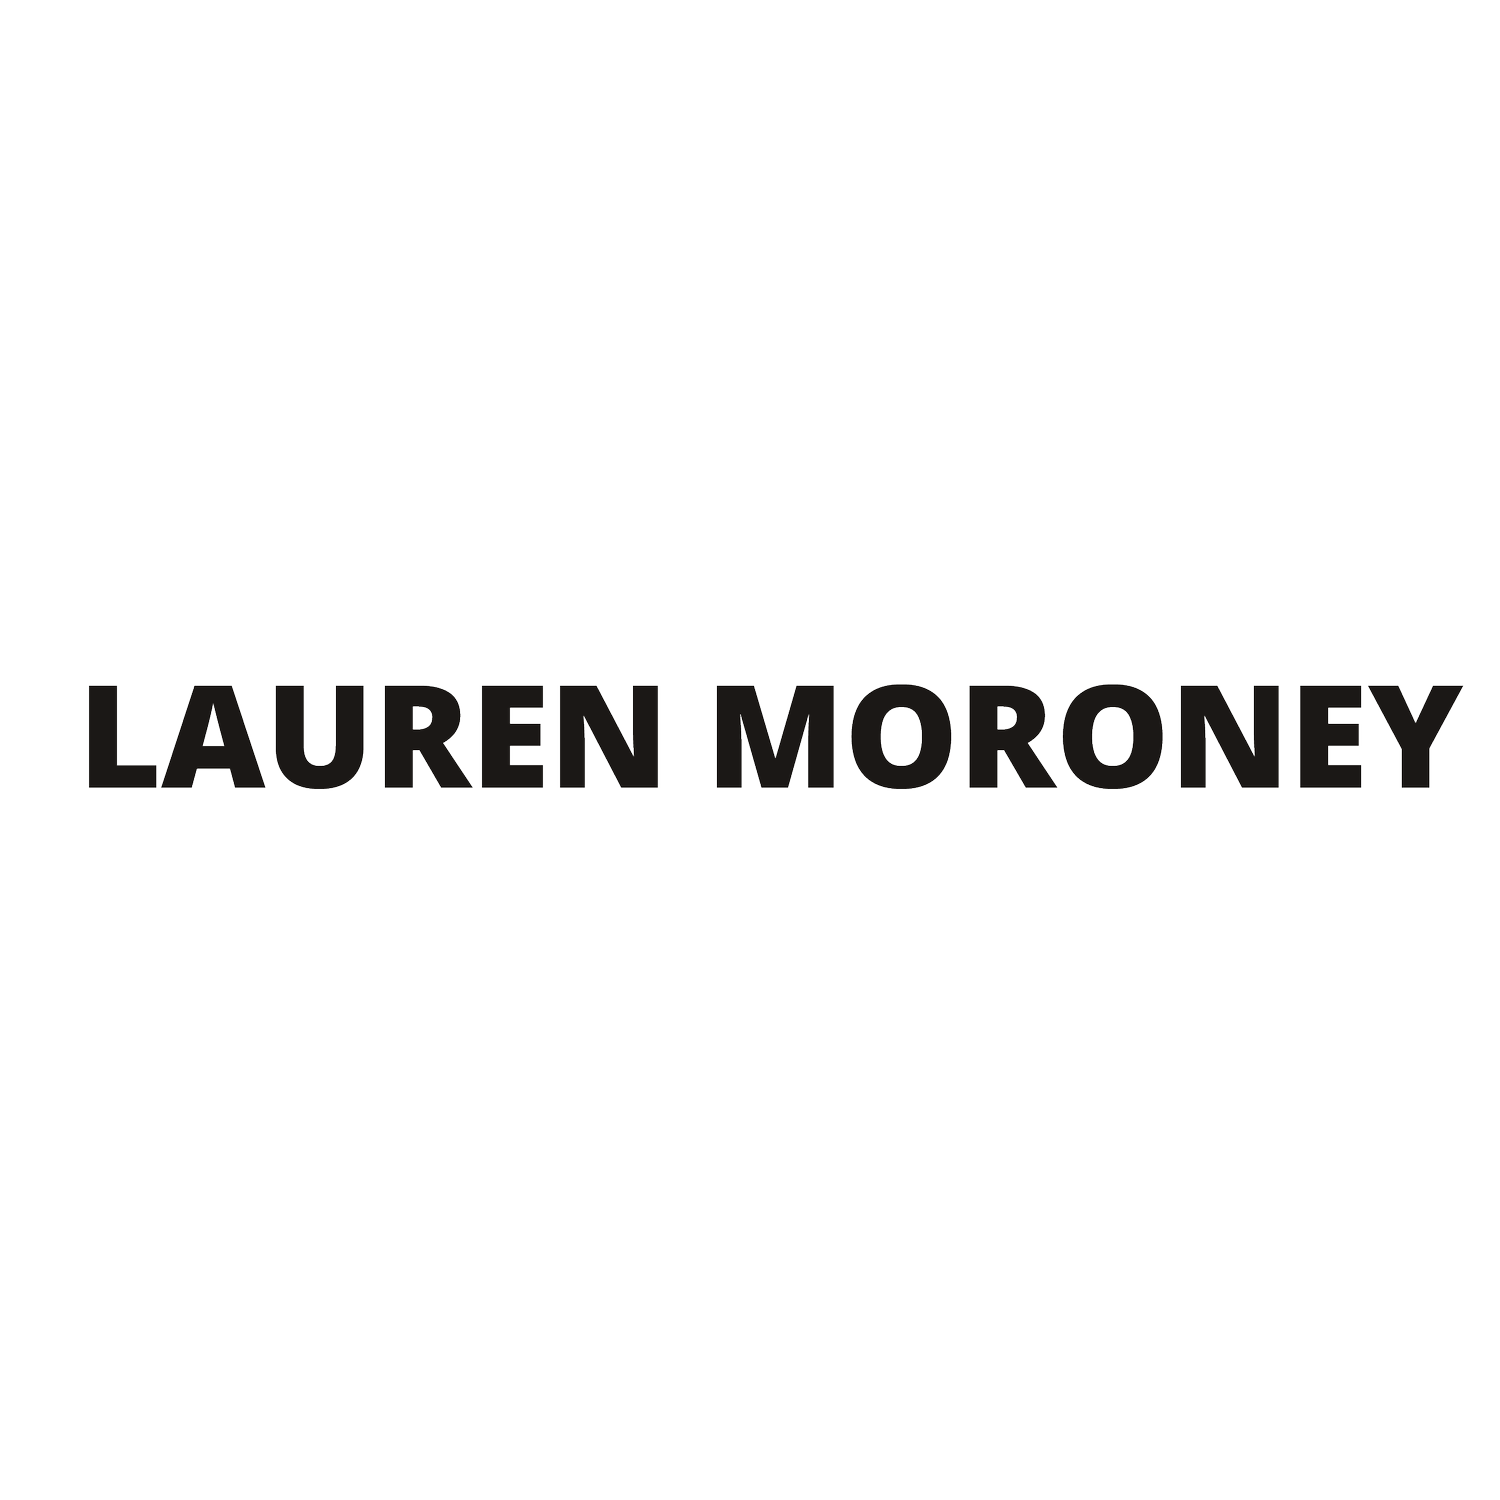 Lauren Moroney